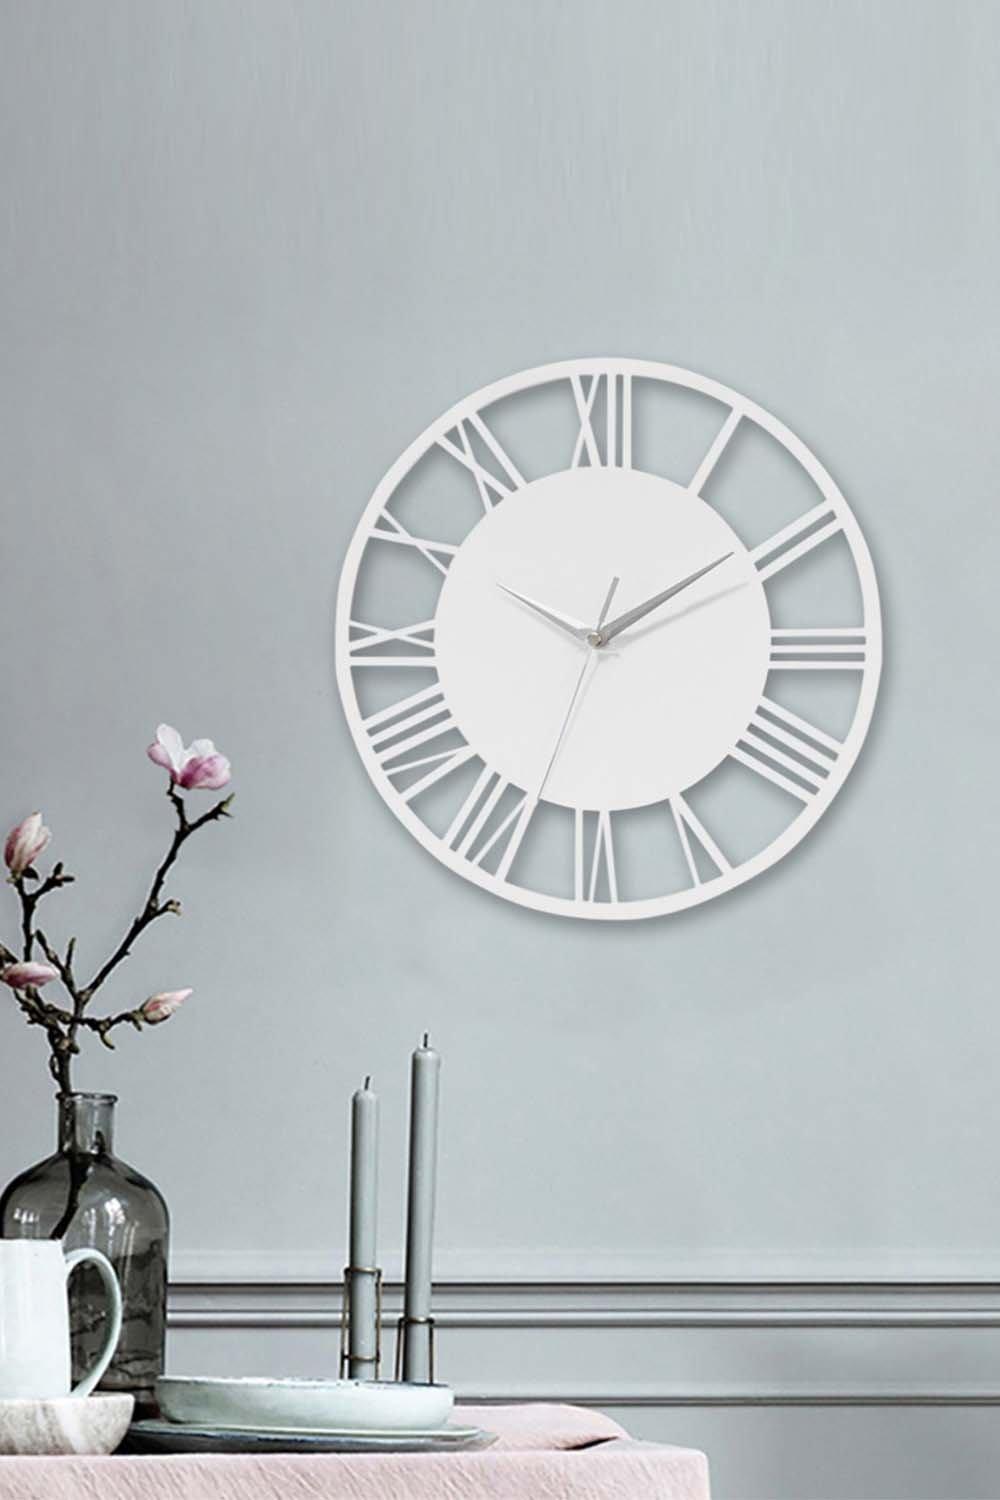 30cm Dia White Round Roman Numeral Skeleton Wall Clock with Silver Needle